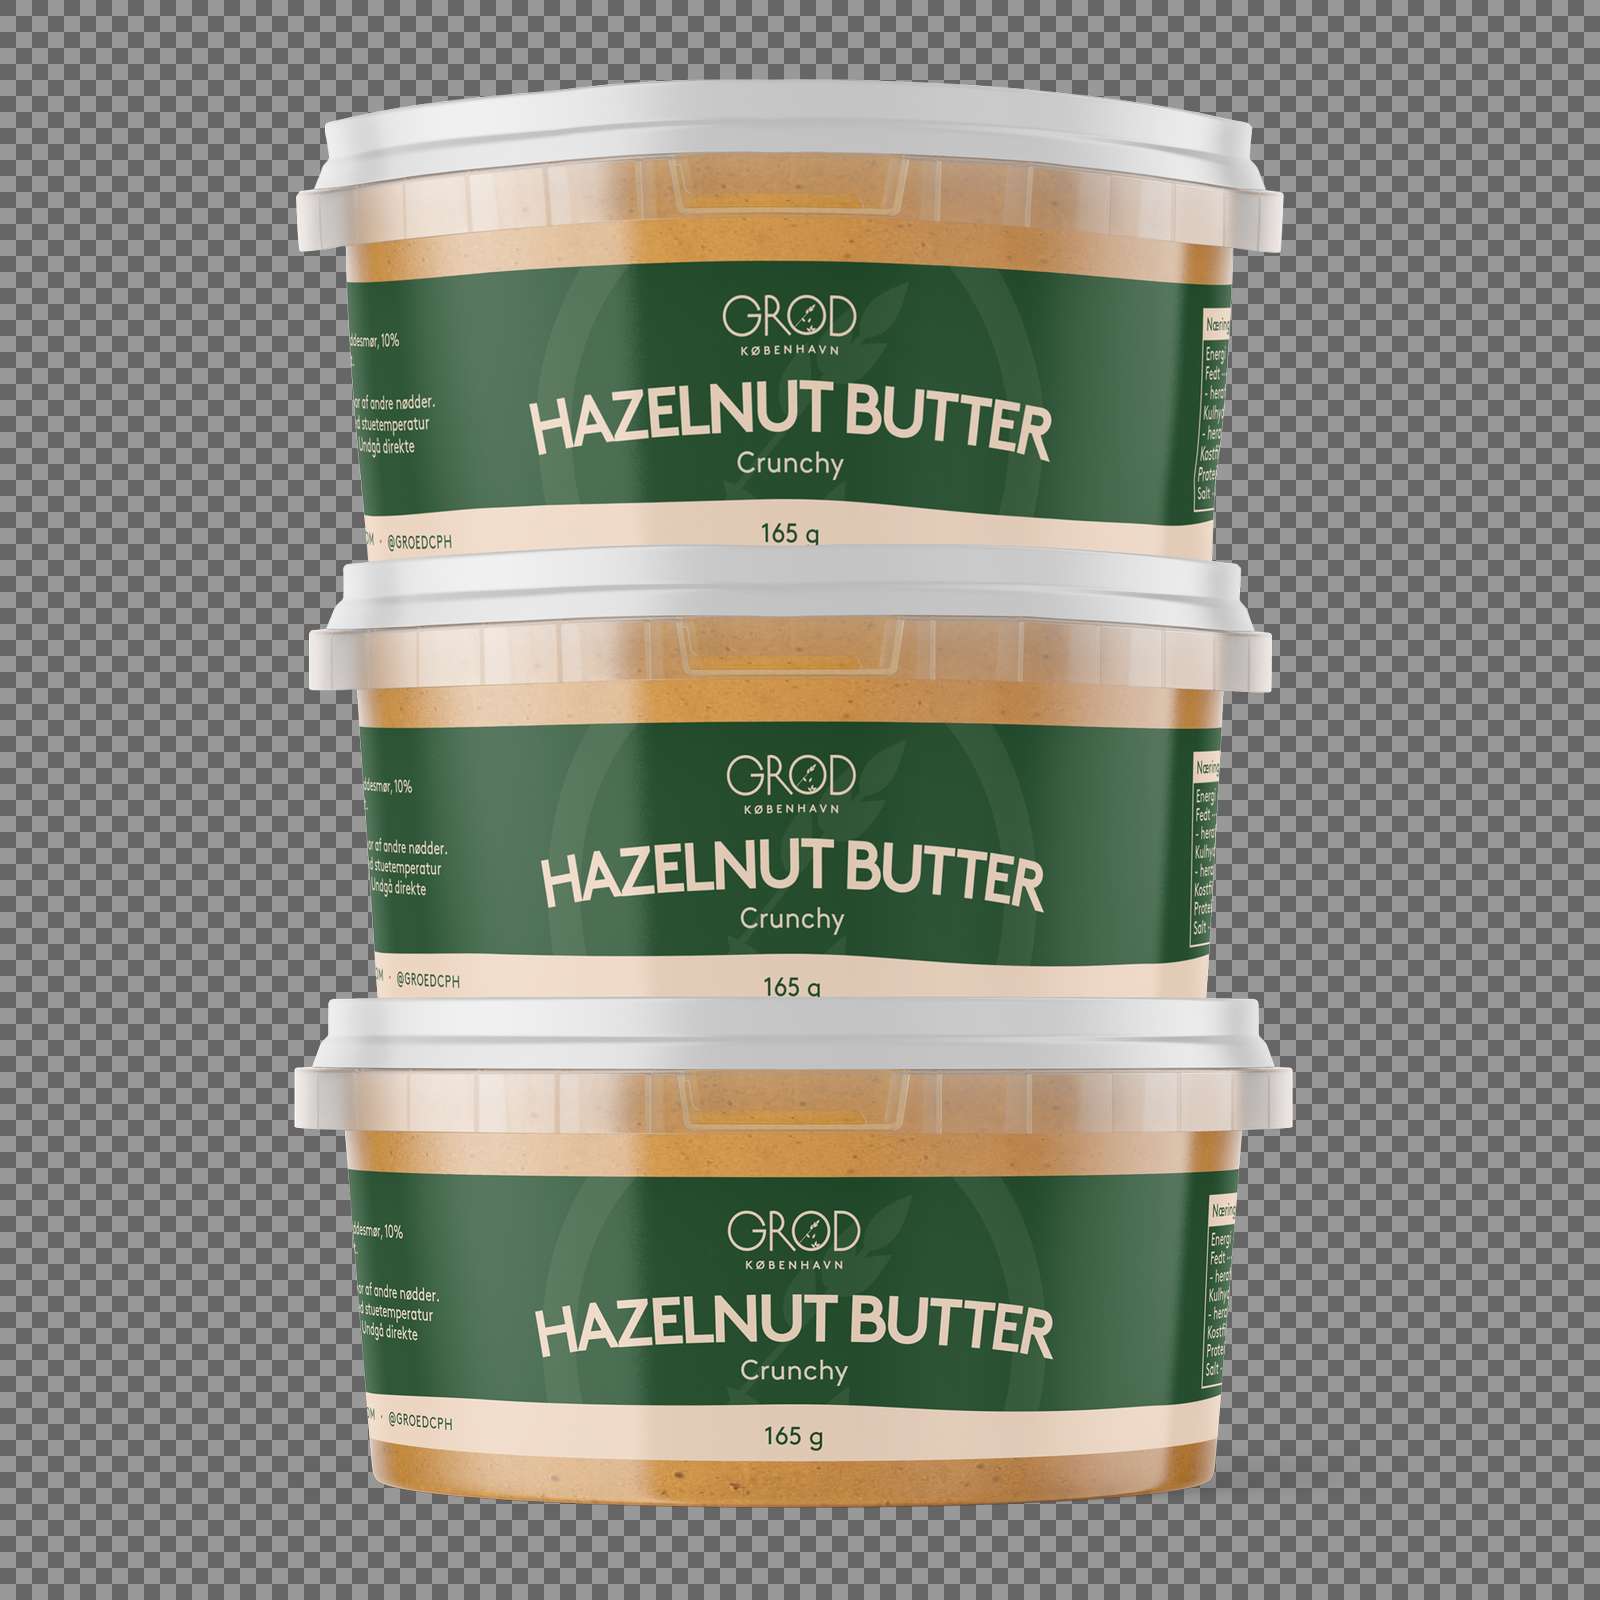 hazelnut butter 165g 3 pack